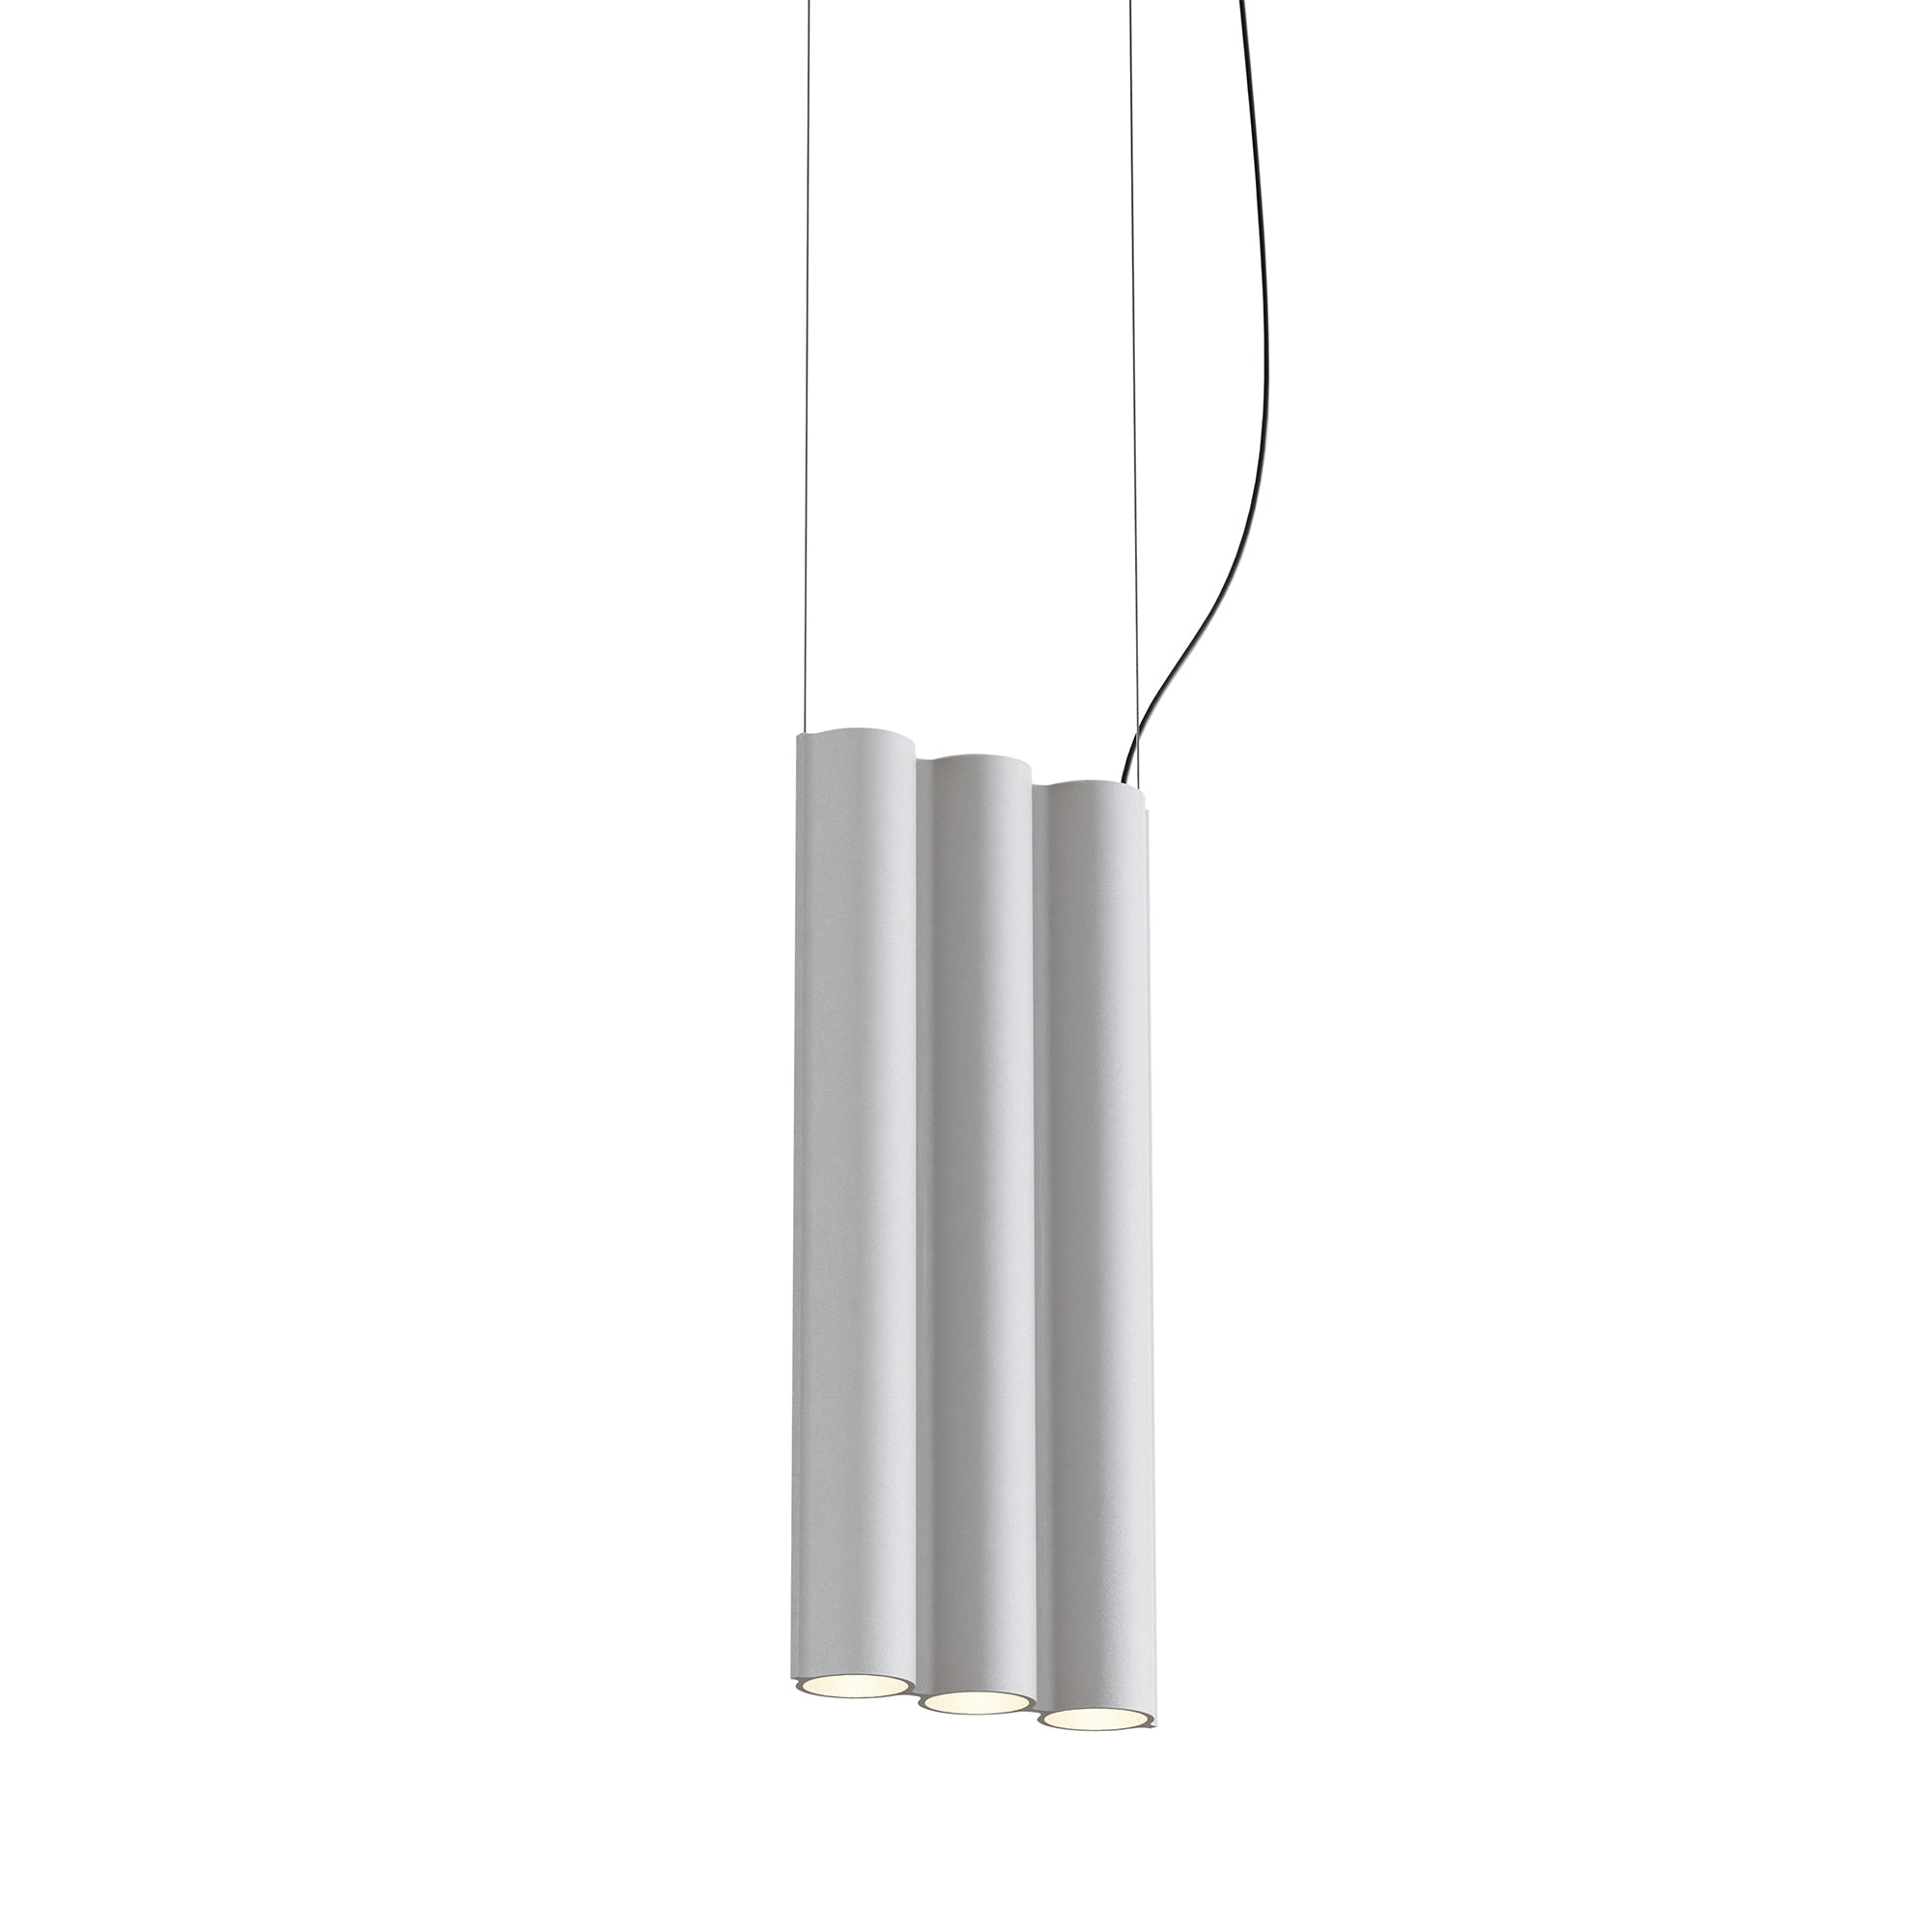 Silo 3SB Suspension Lamp: White